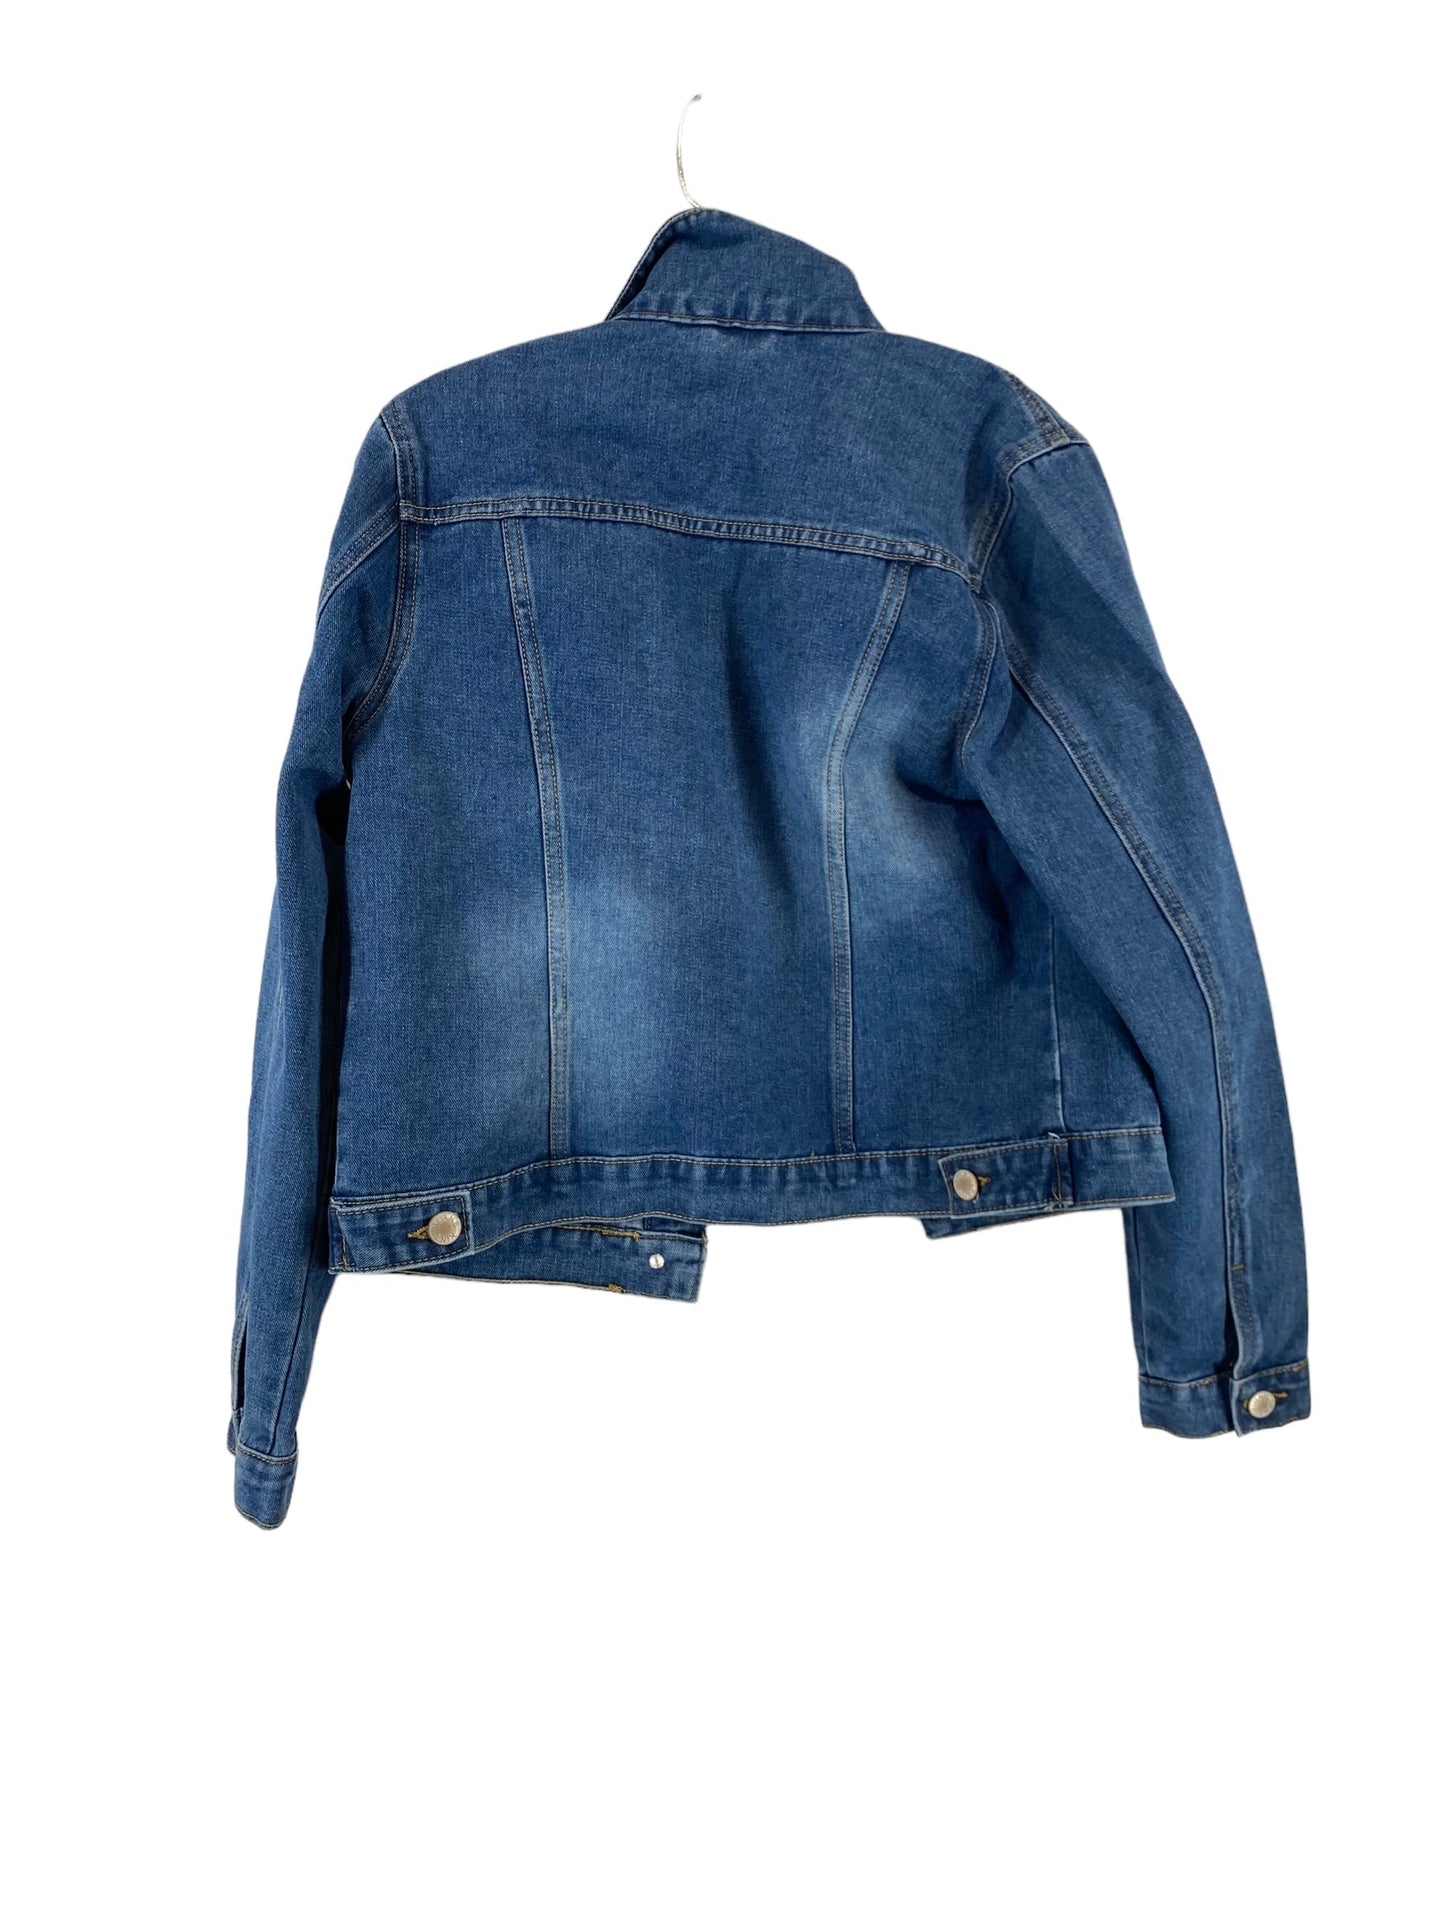 Blue Jacket Denim Clothes Mentor, Size L